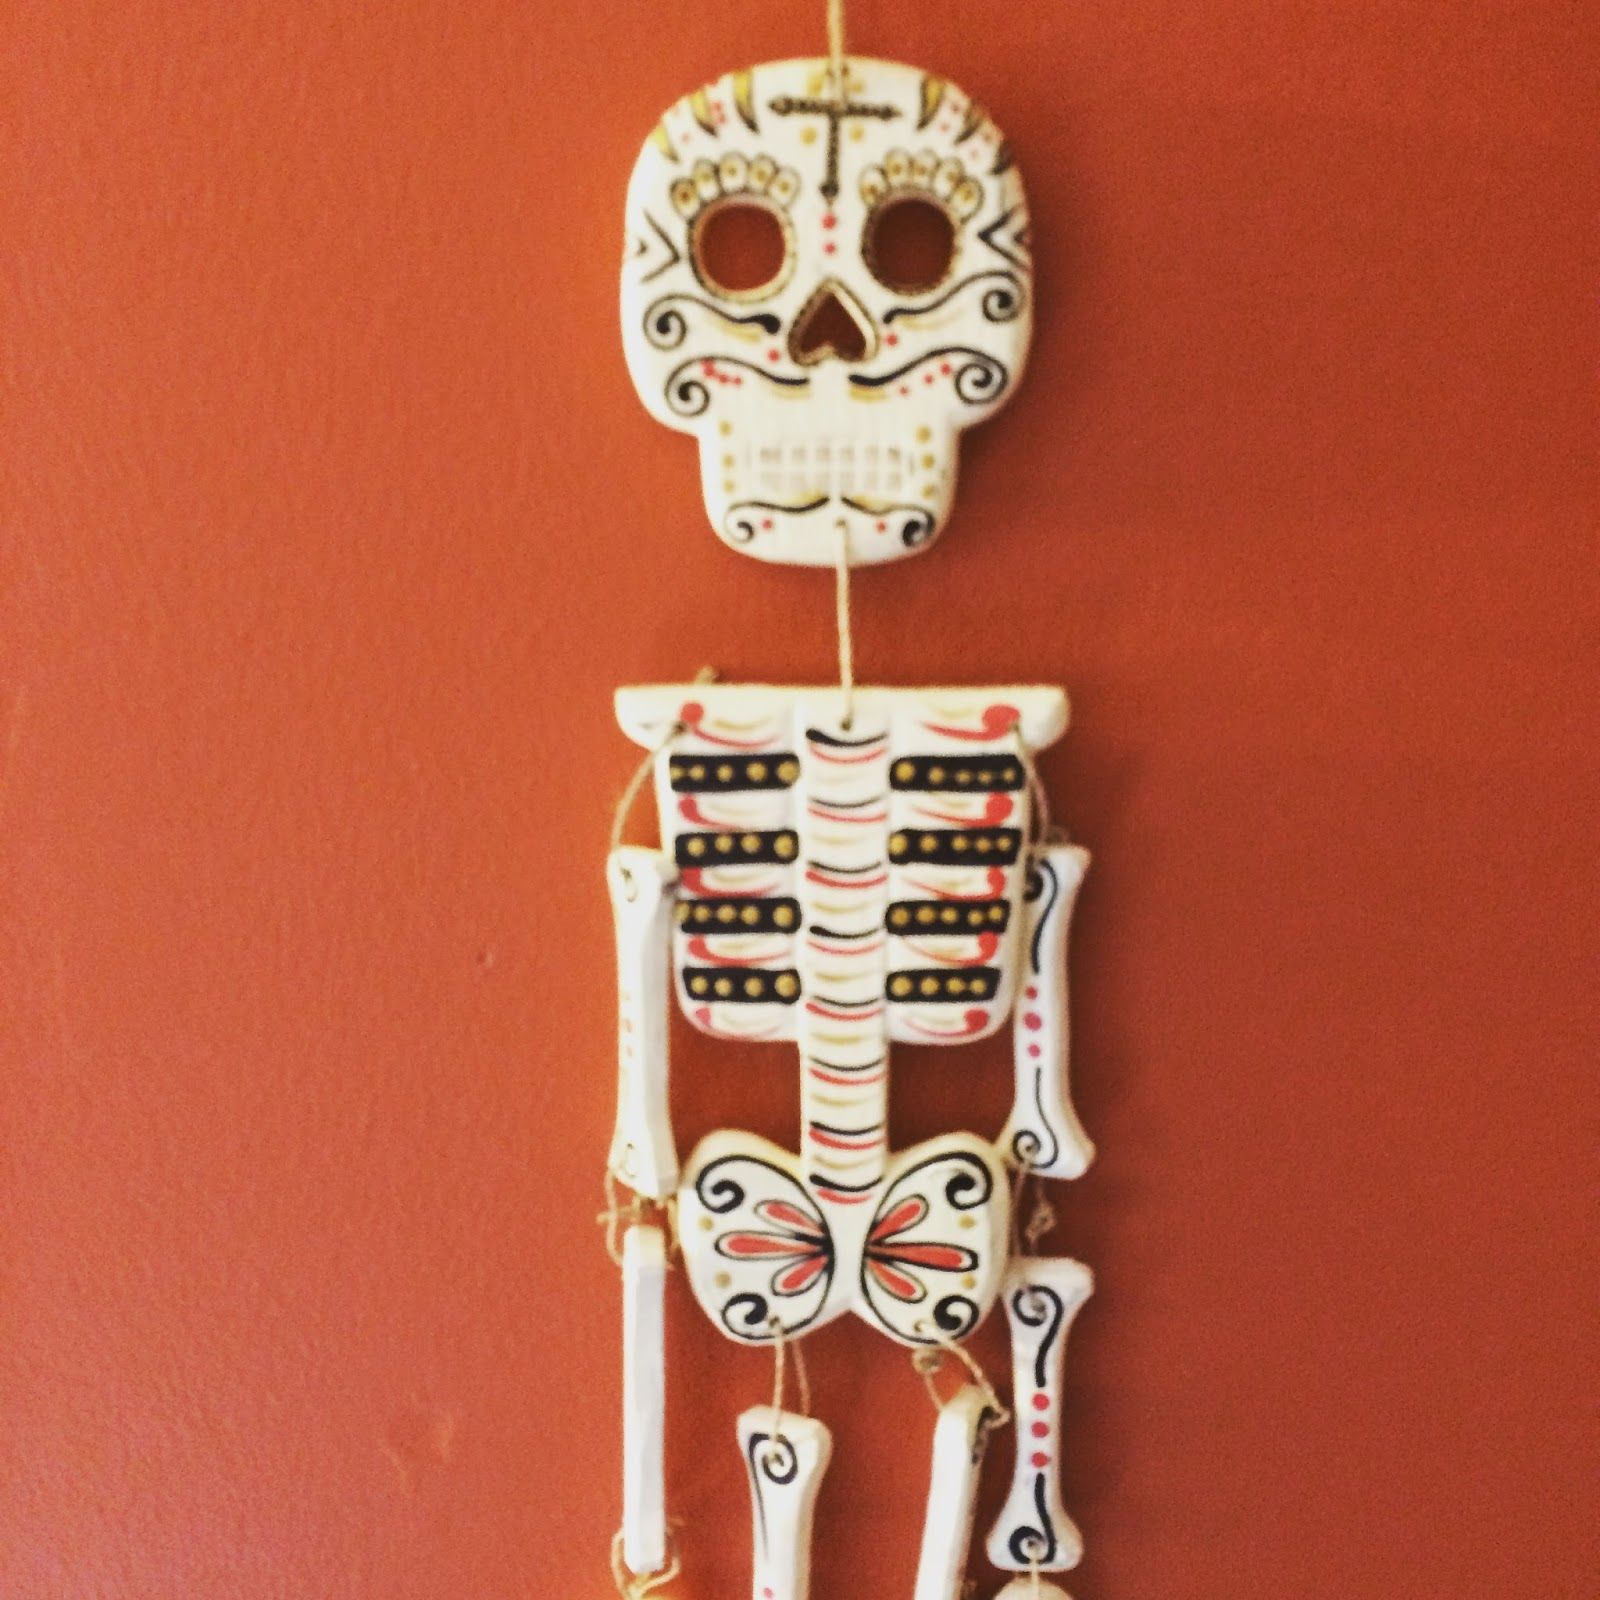 A Dia de Los Muertos skeleton wall hanging